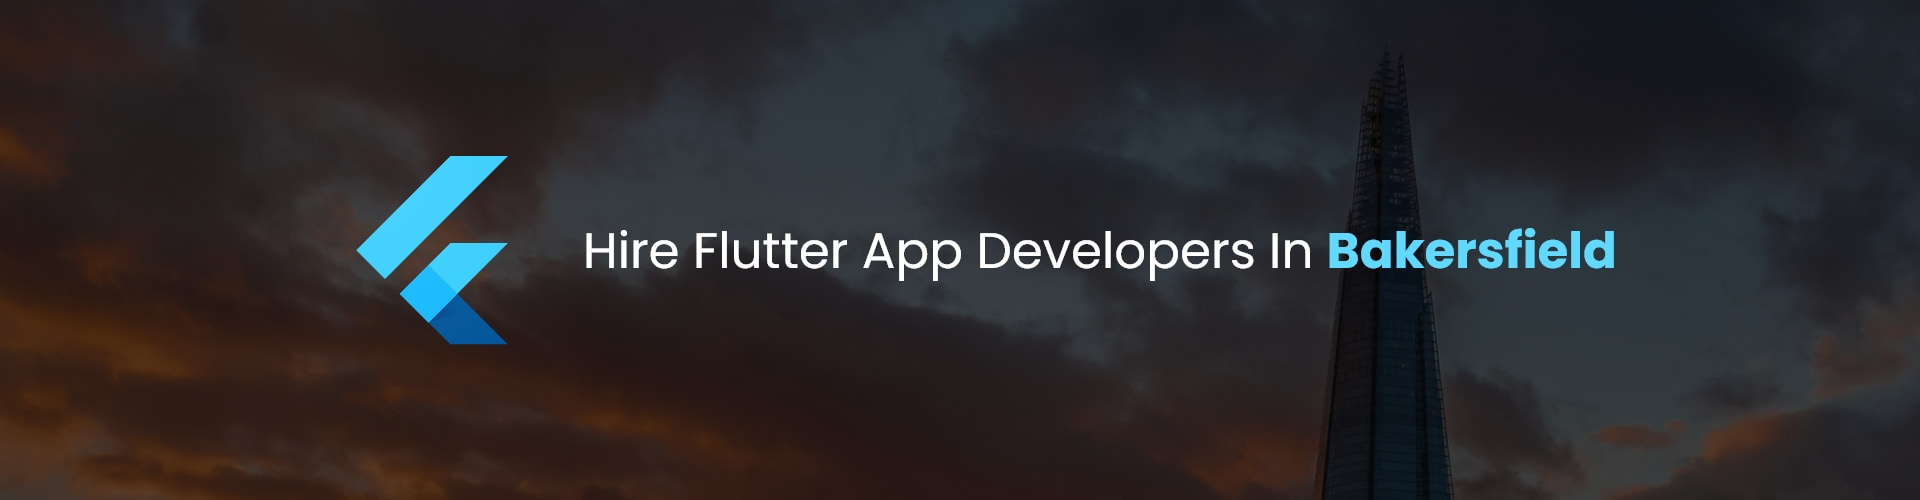 hire flutter app developers in bakersfield